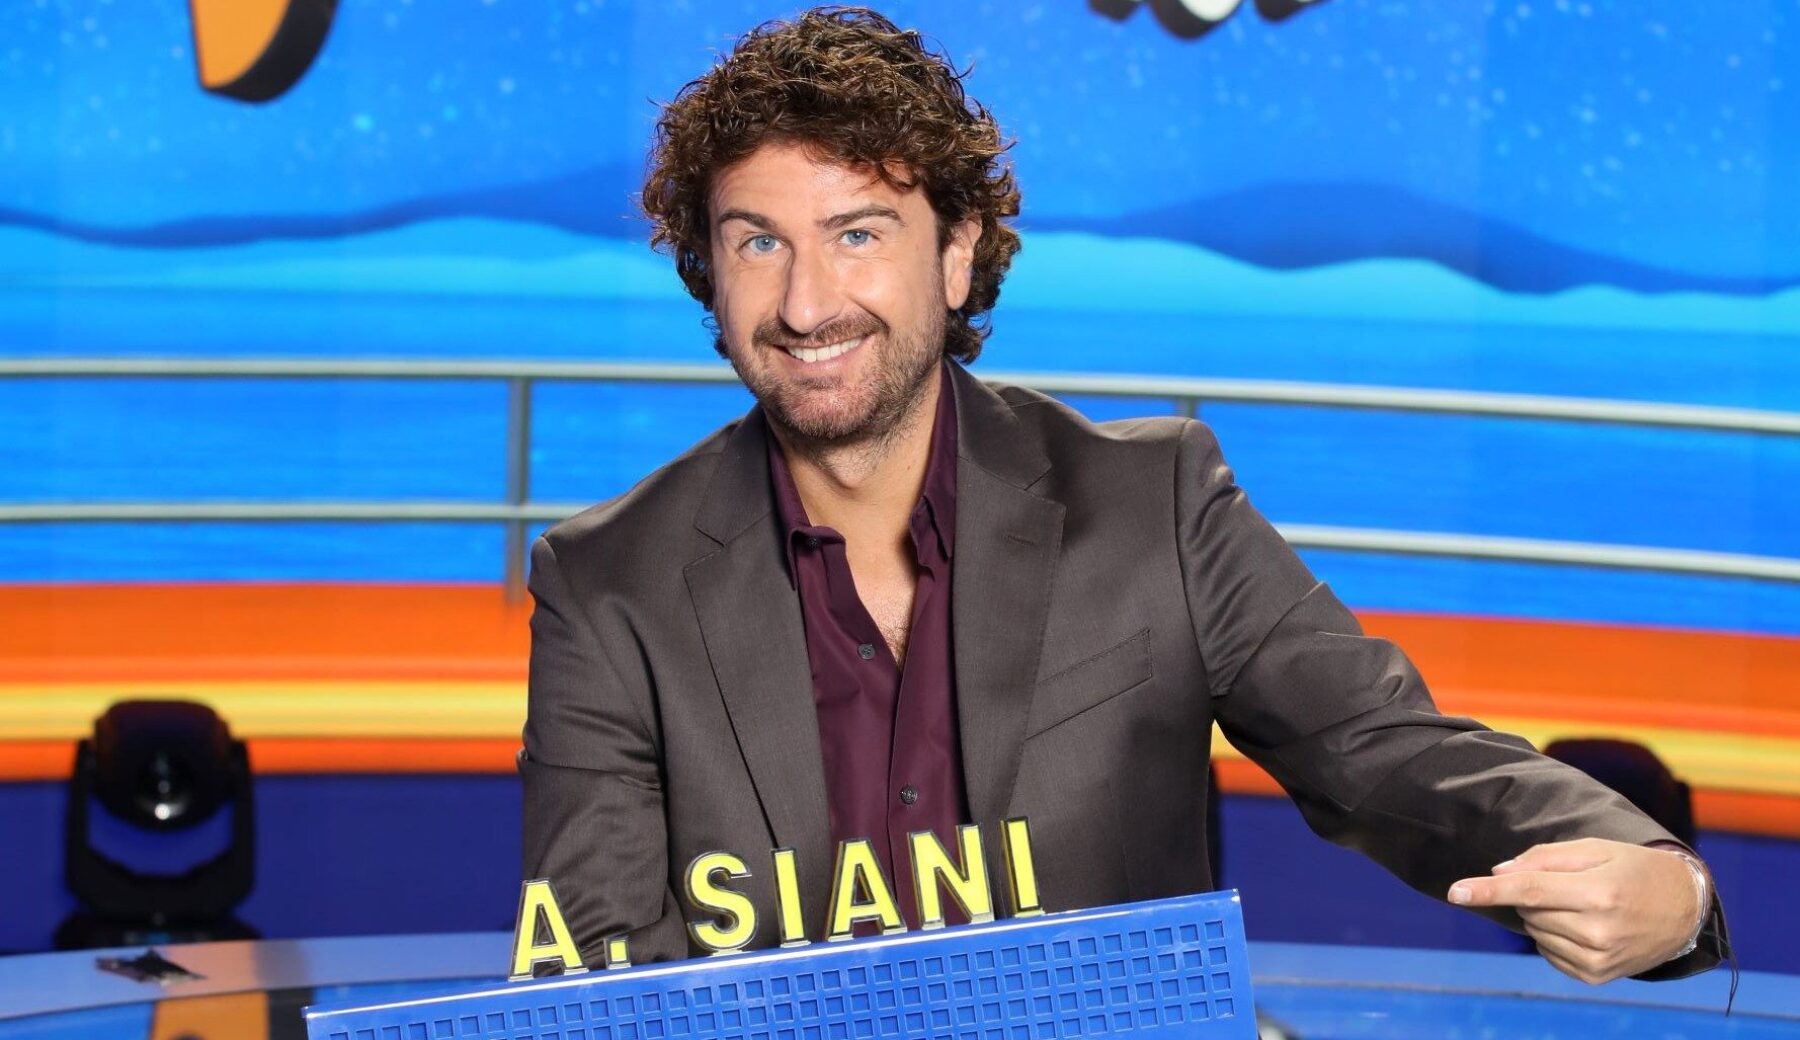 Alessandro Siani